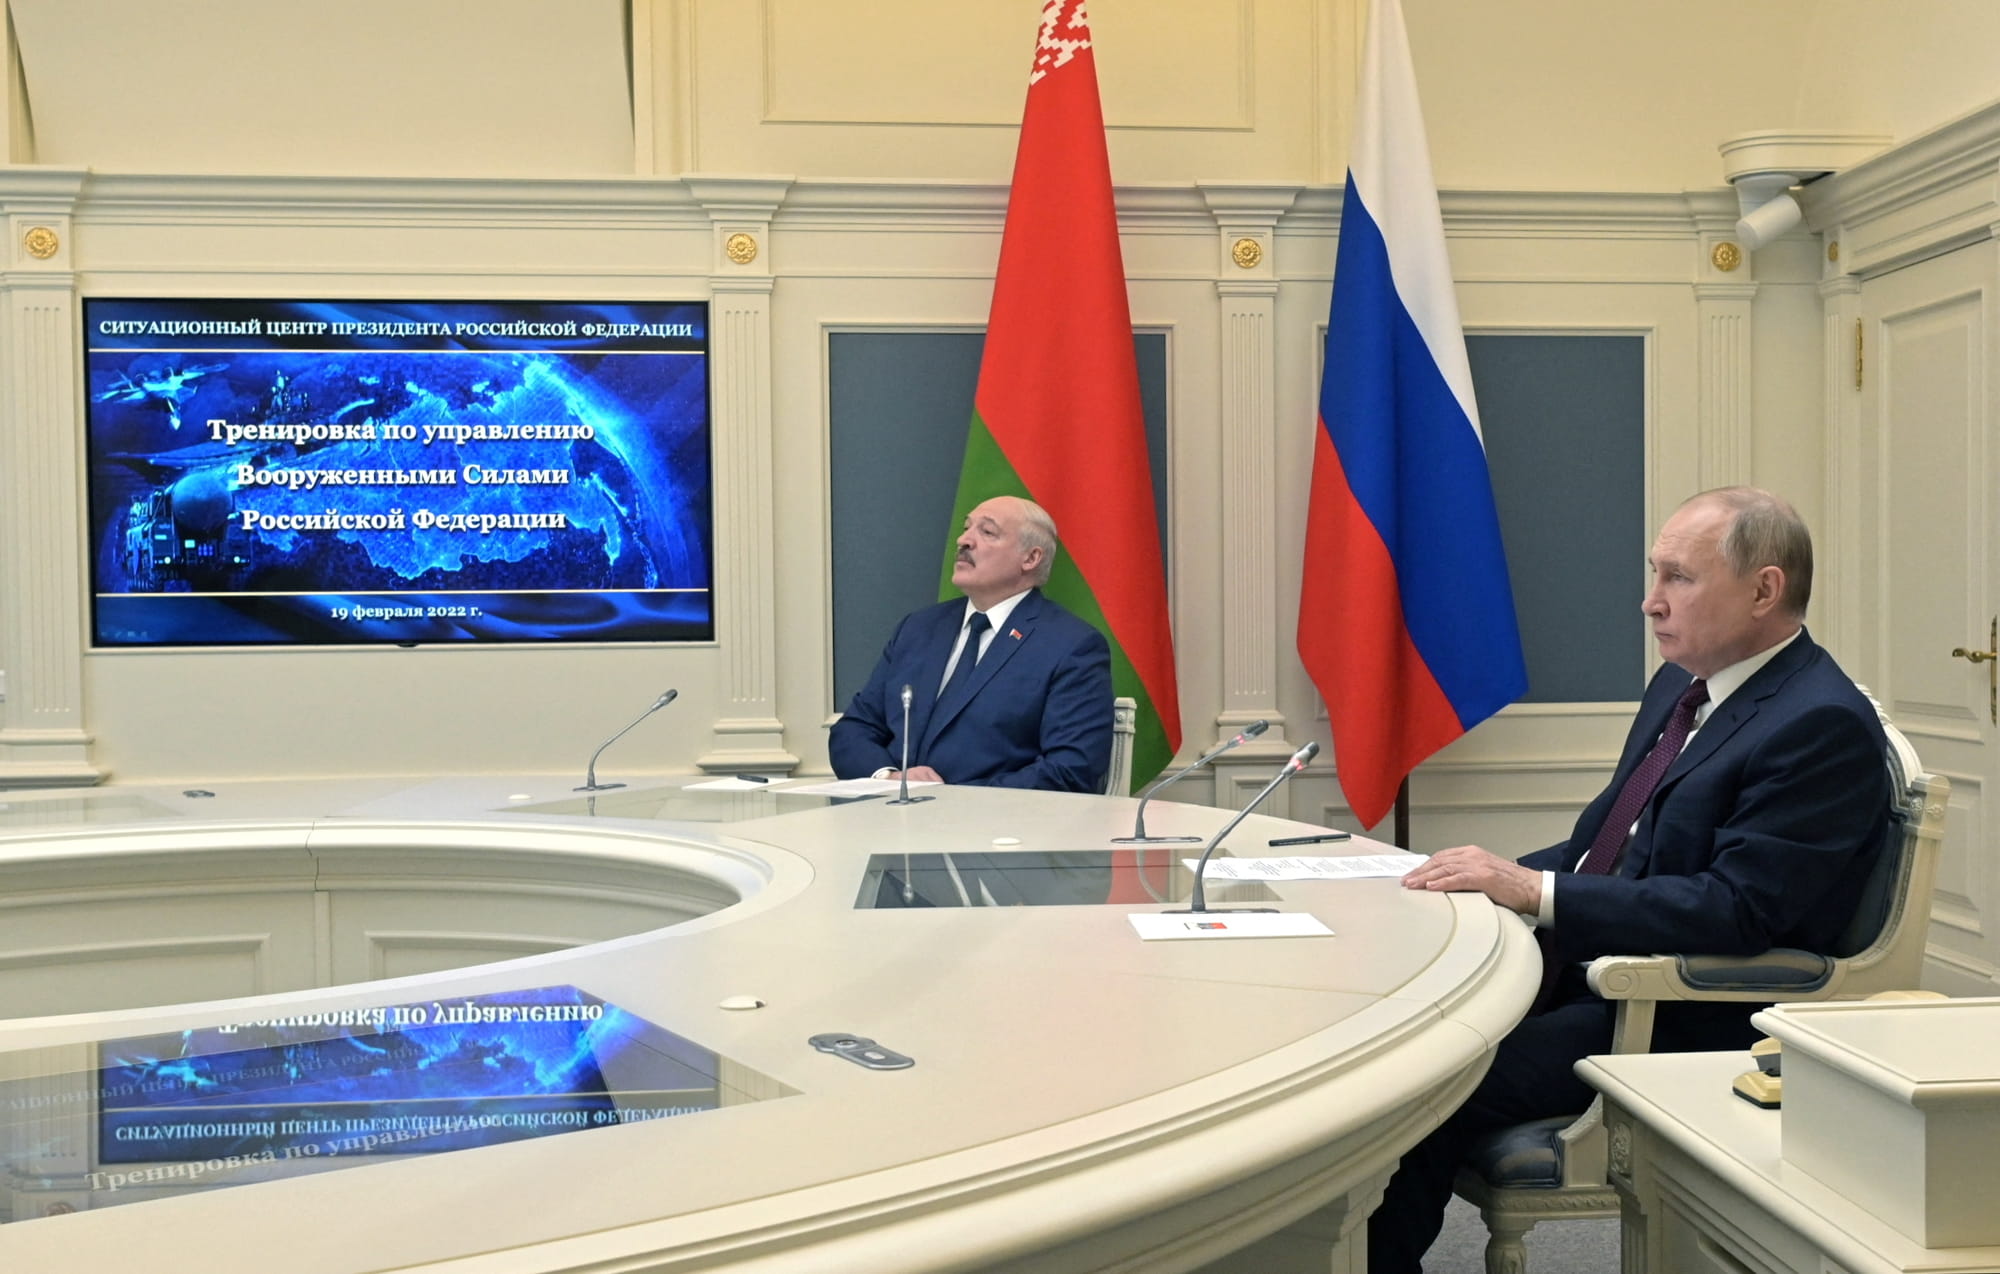 El presidente ruso Vladimir Putin (R) y su homólogo bielorruso Alexander Lukashenko (L) observan lanzamientos de entrenamiento de misiles balísticos como parte del ejercicio de la Fuerza de Disuasión Estratégica Grom-2022, desde el centro de situación del Ministerio de Defensa ruso en Moscú el 19 de febrero de 2022 (Alexey NIKOLSKY / Sputnik / AFP)